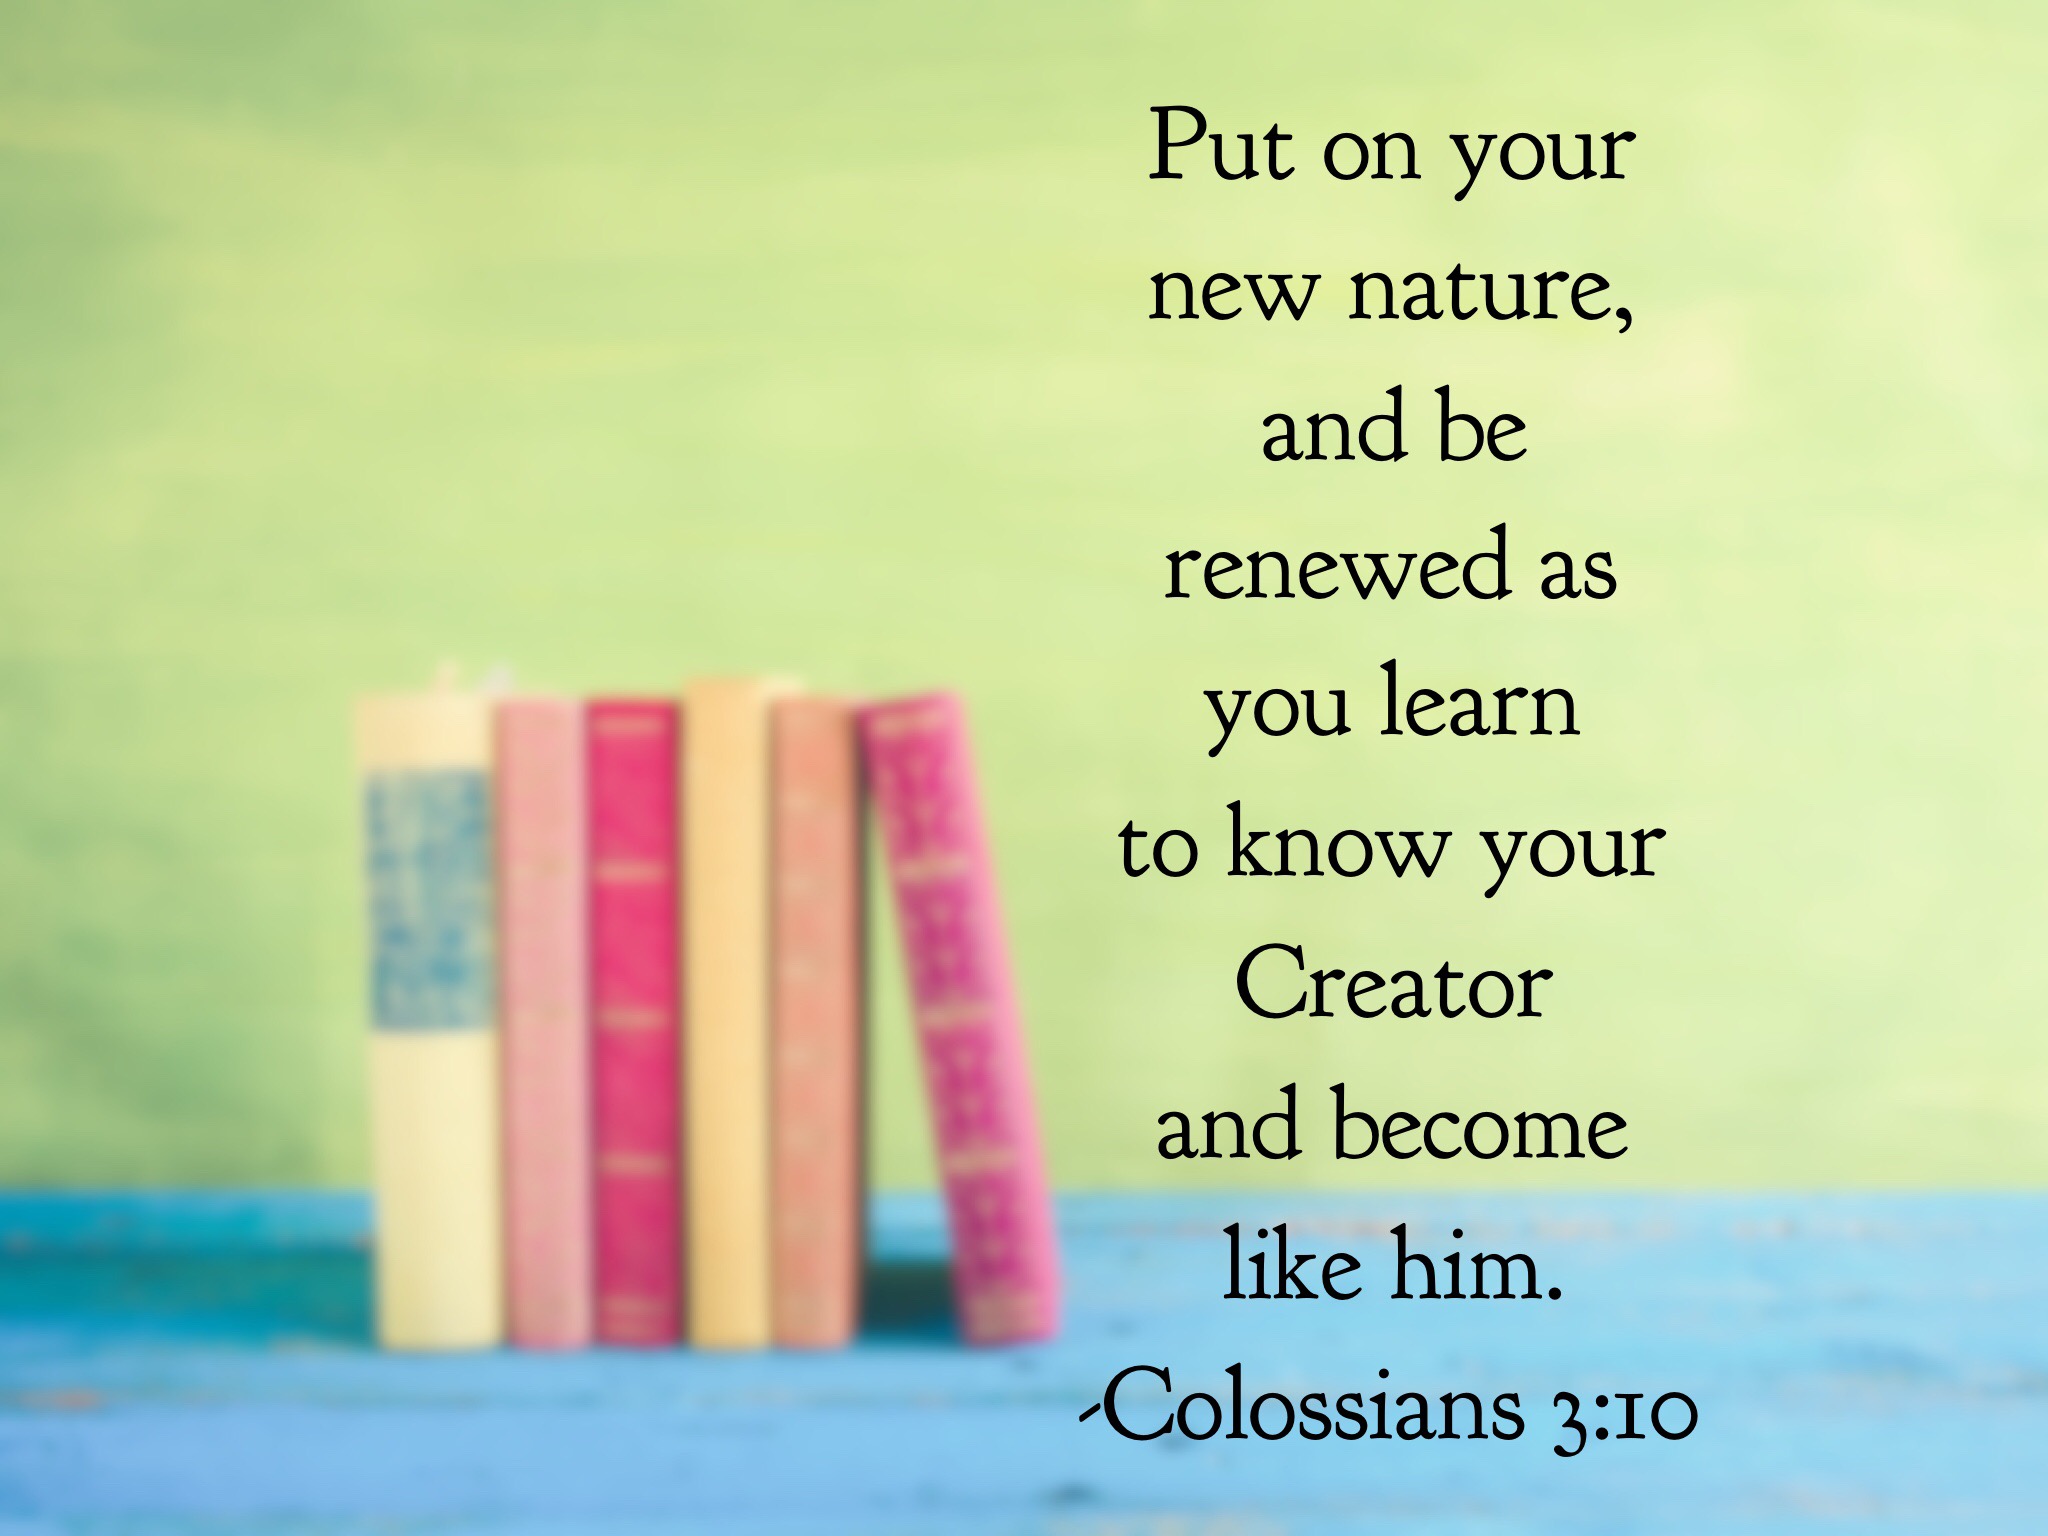 Colossians 3:10